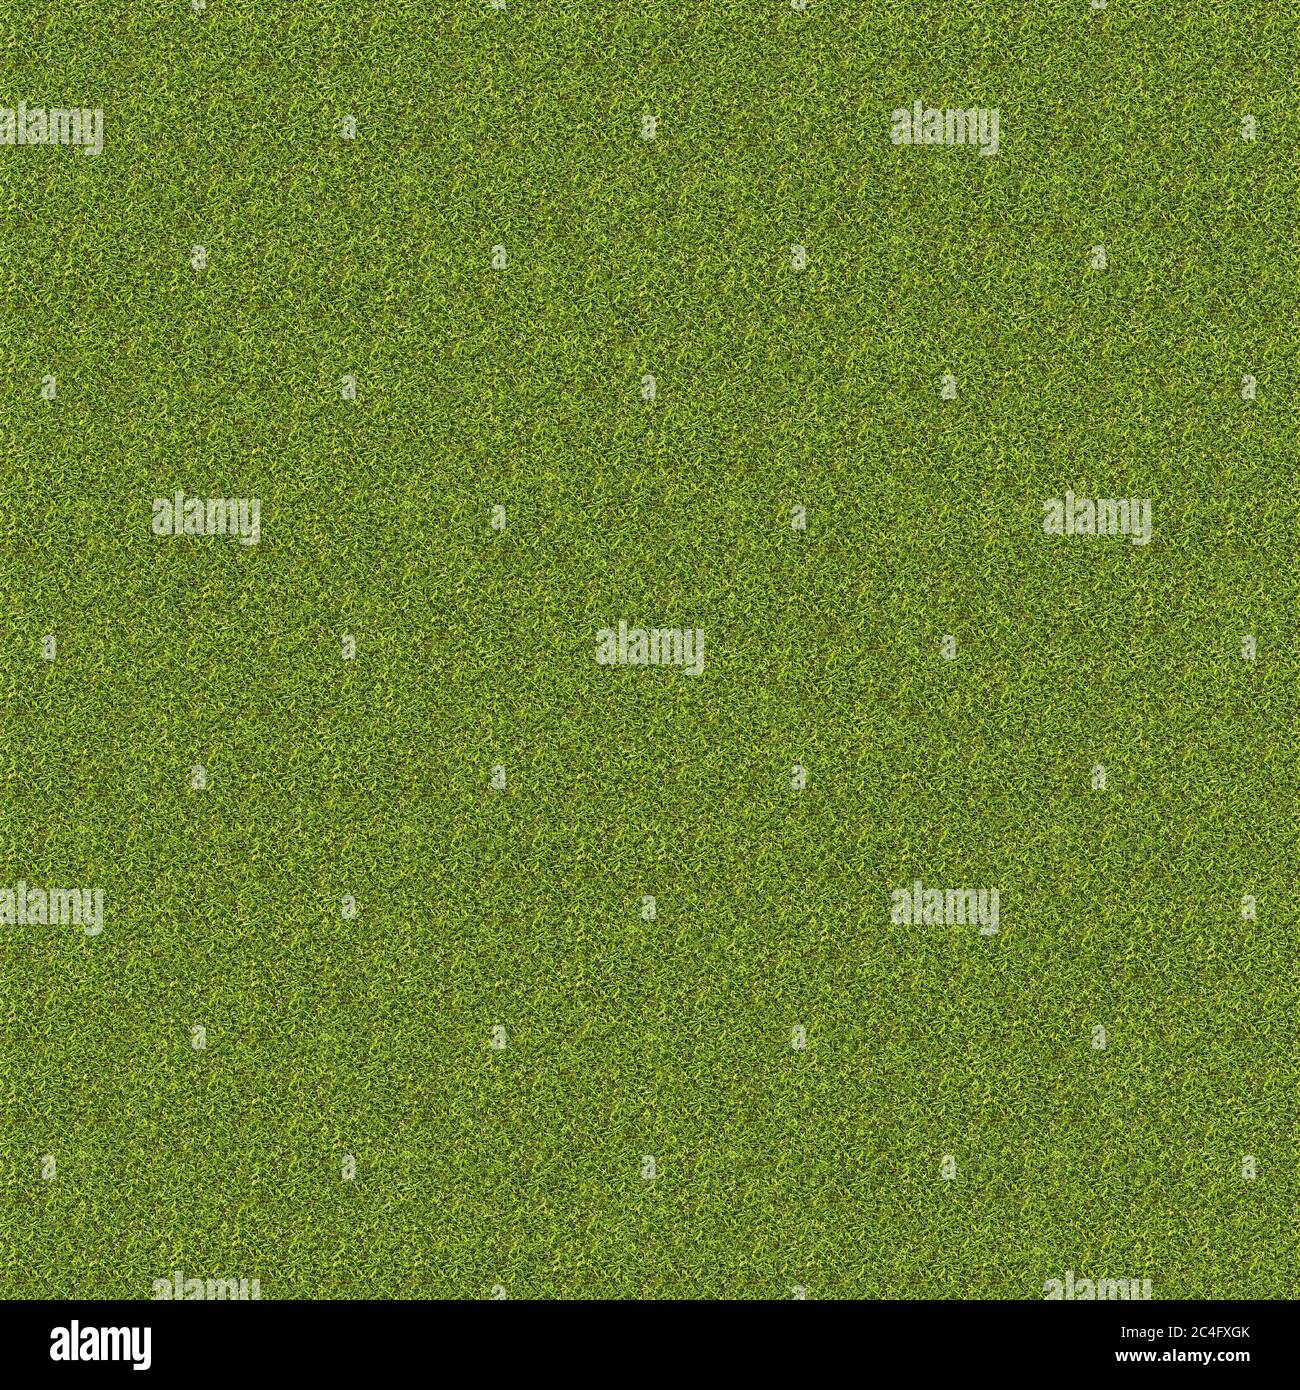 4K High resolution seamless grass texture Stock Photo